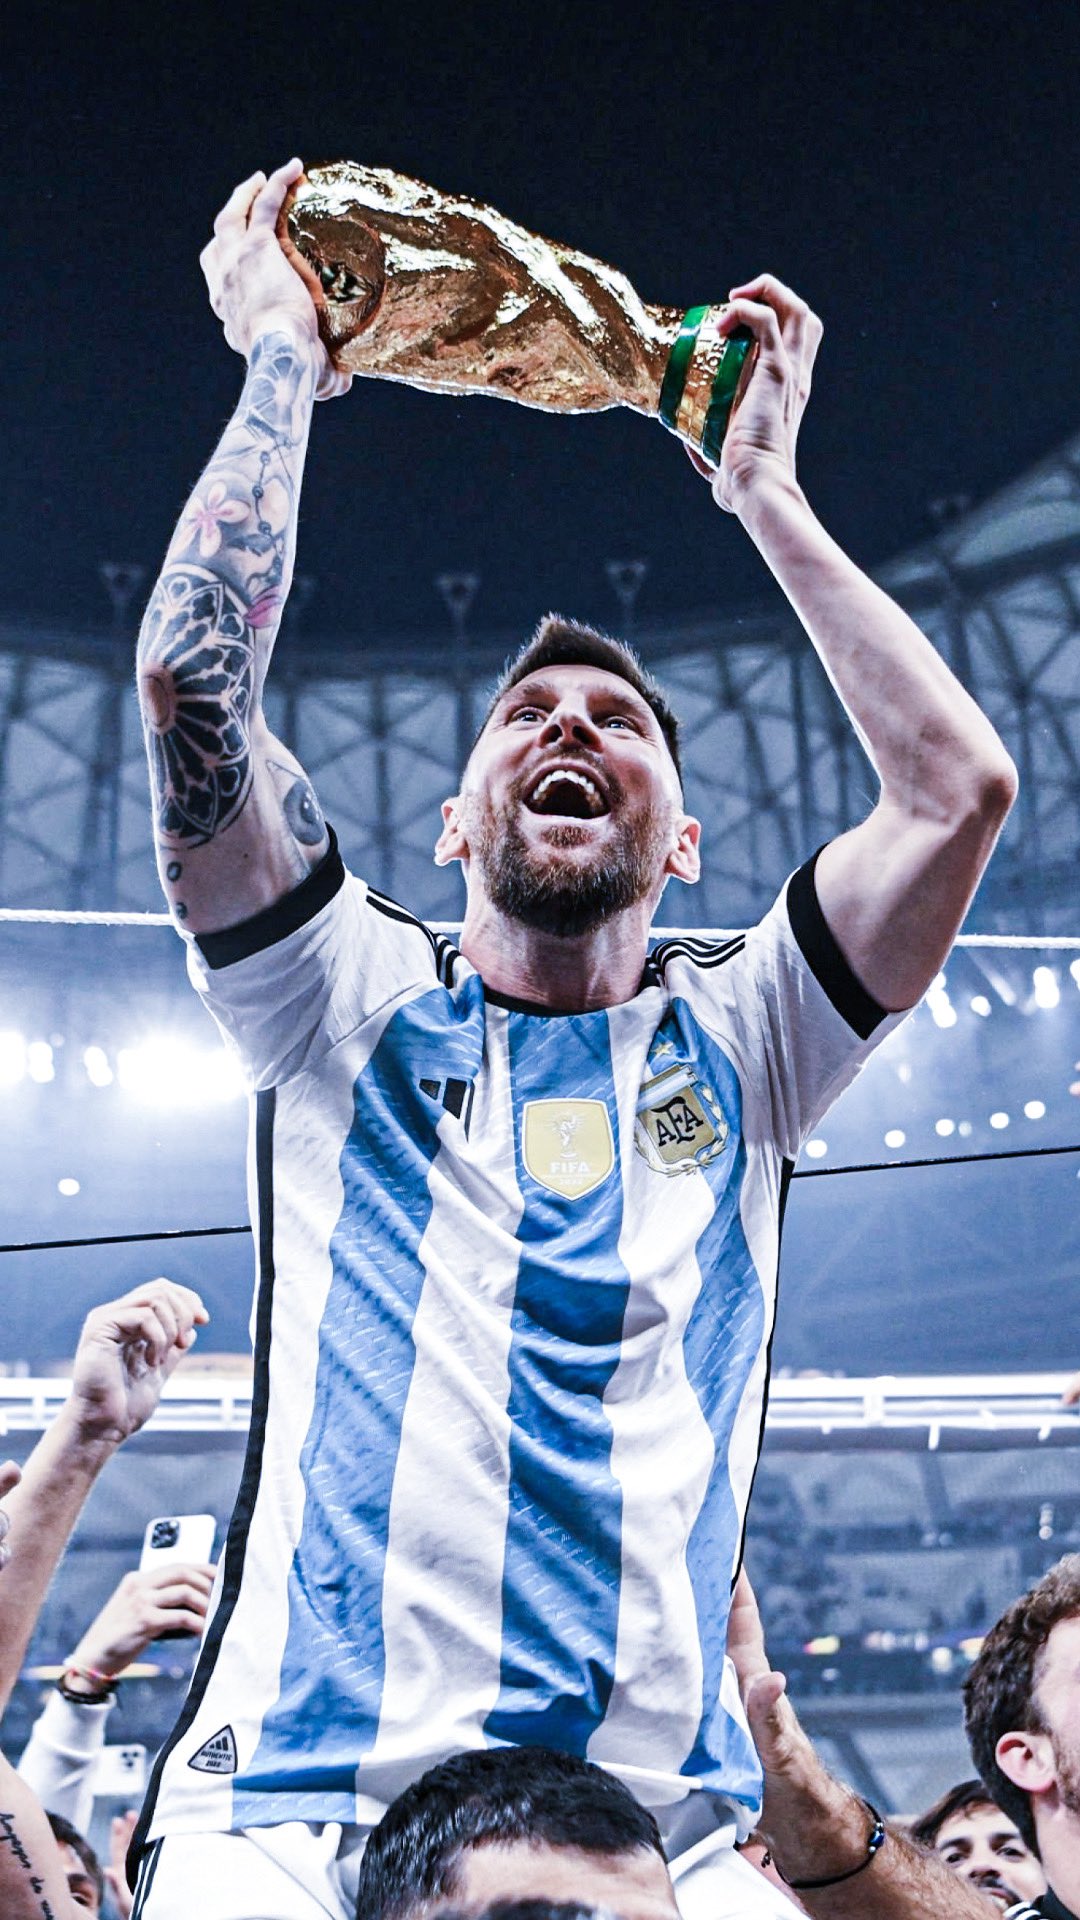 Messi picture: Nếu bạn là fan hâm mộ của bóng đá, thì không thể bỏ qua hình ảnh của Messi. Đây là một cầu thủ bóng đá tài năng và vĩ đại nhất từng được biết đến. Hình ảnh sẽ giúp bạn ôn lại những trận đấu đỉnh cao và khoảnh khắc đặc biệt của Messi.